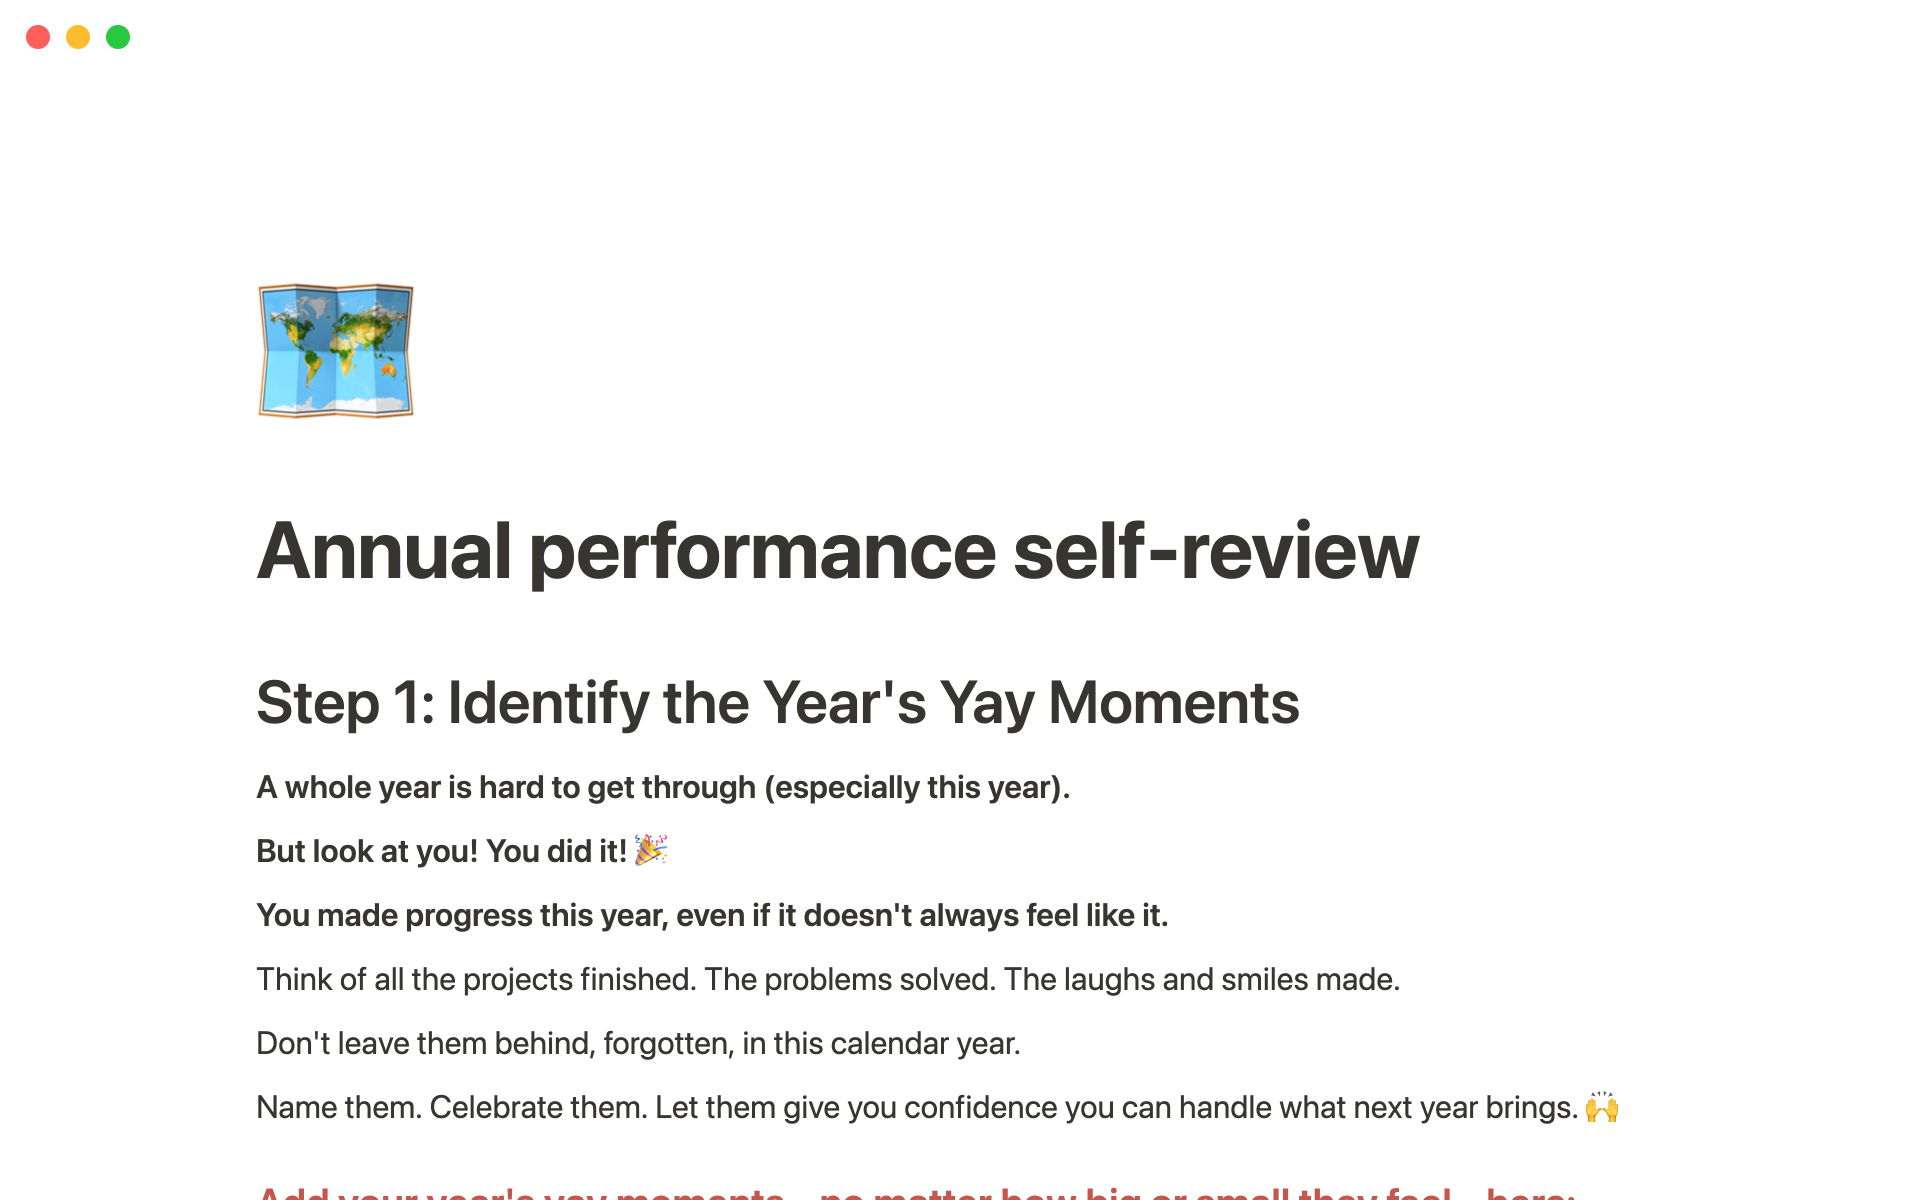 Uma prévia do modelo para Annual performance self-review